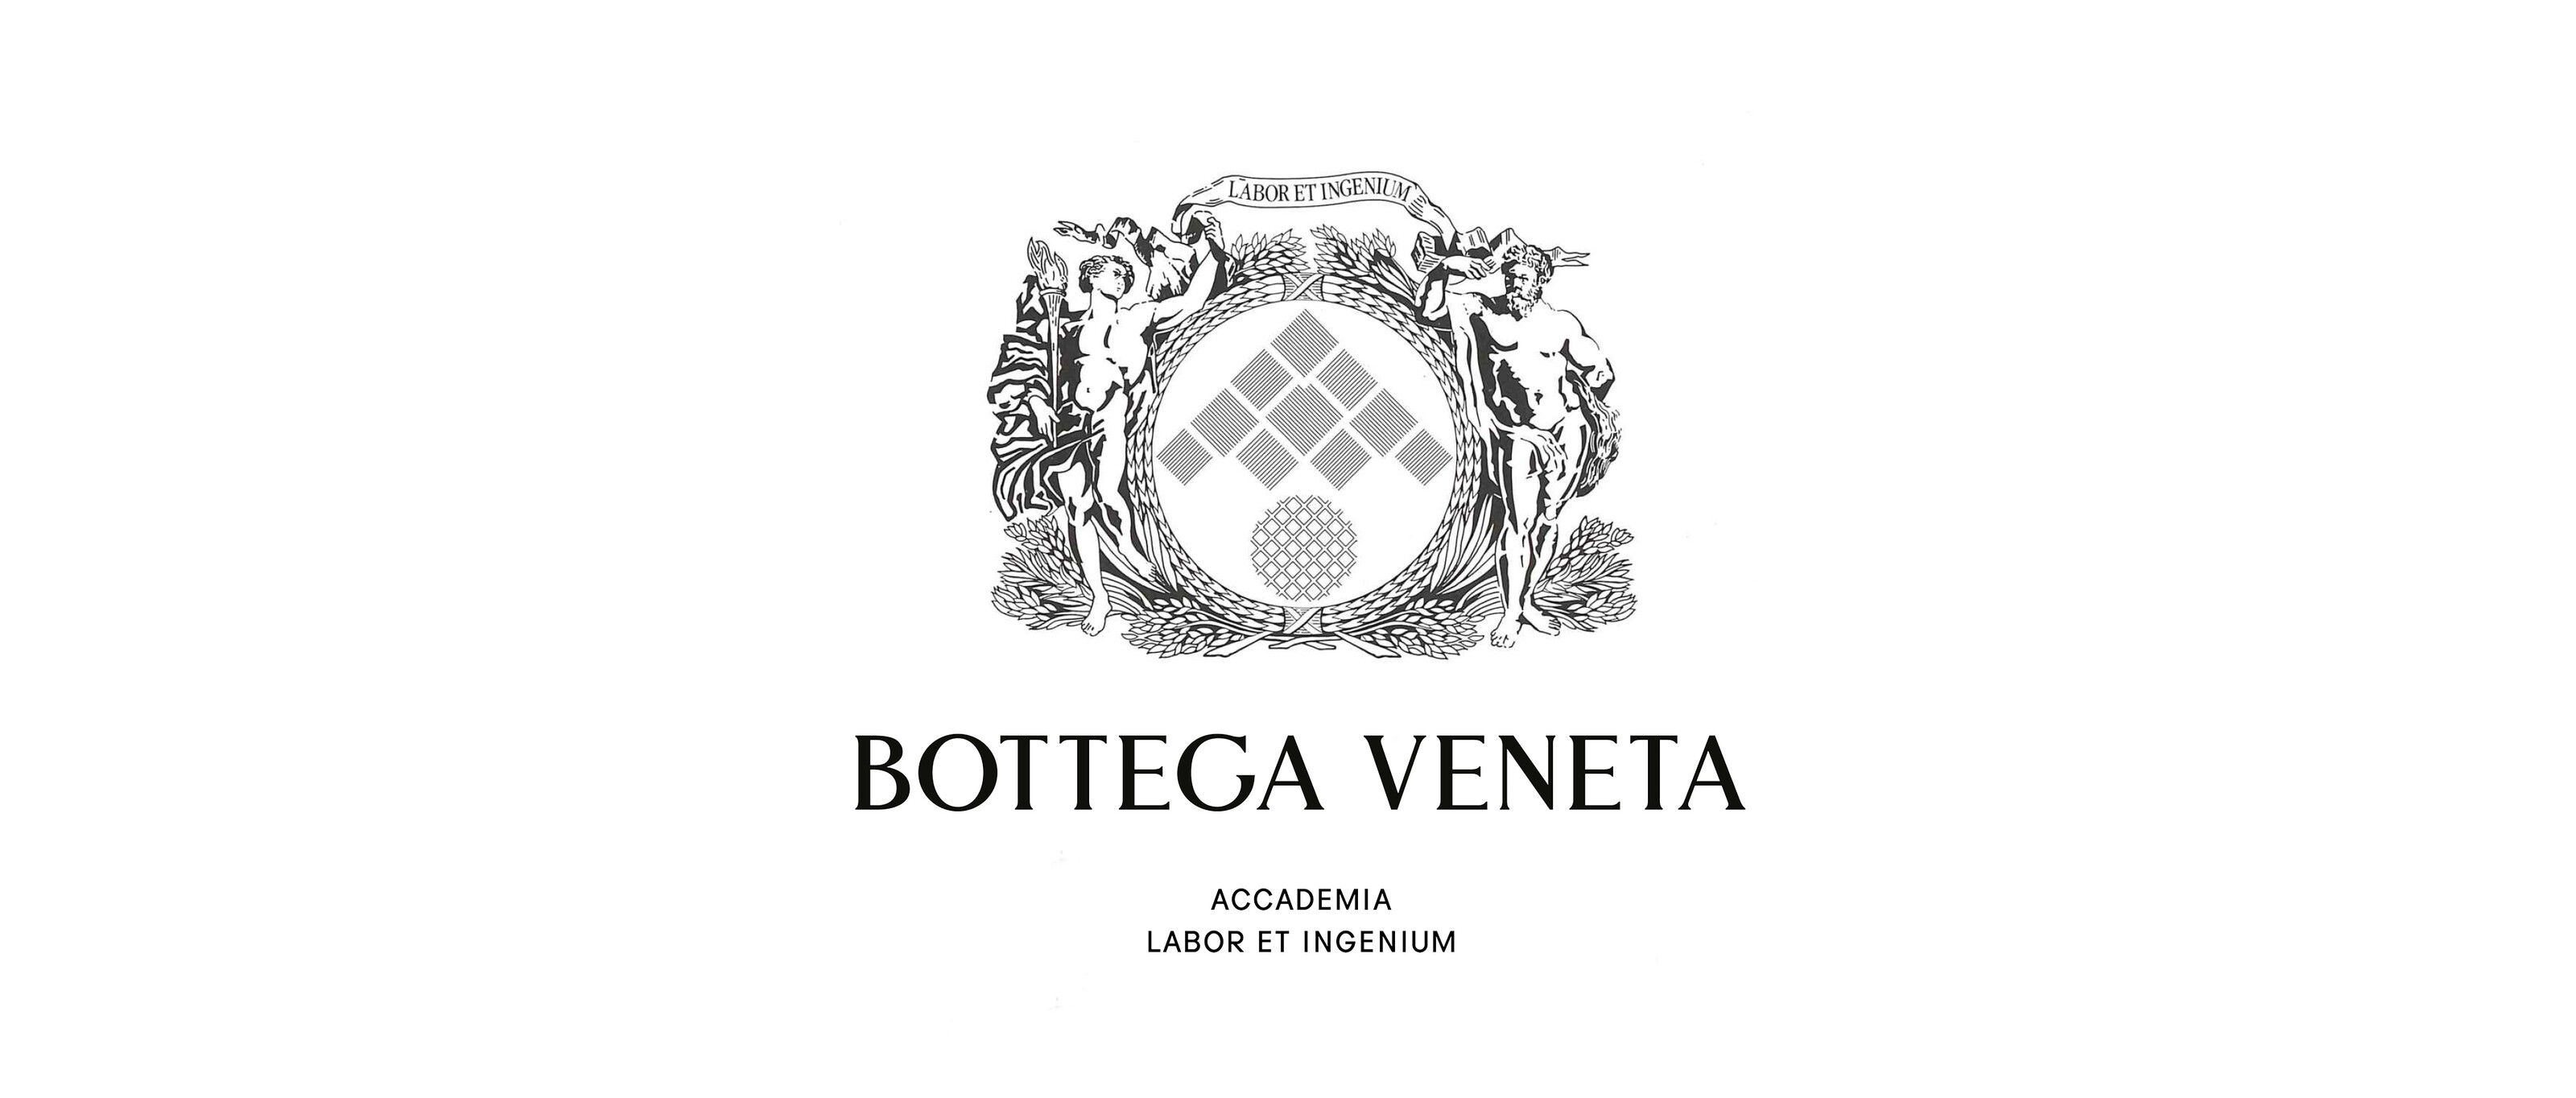 BOTTEGA VENETA 工艺与创意学院 | Bottega Veneta